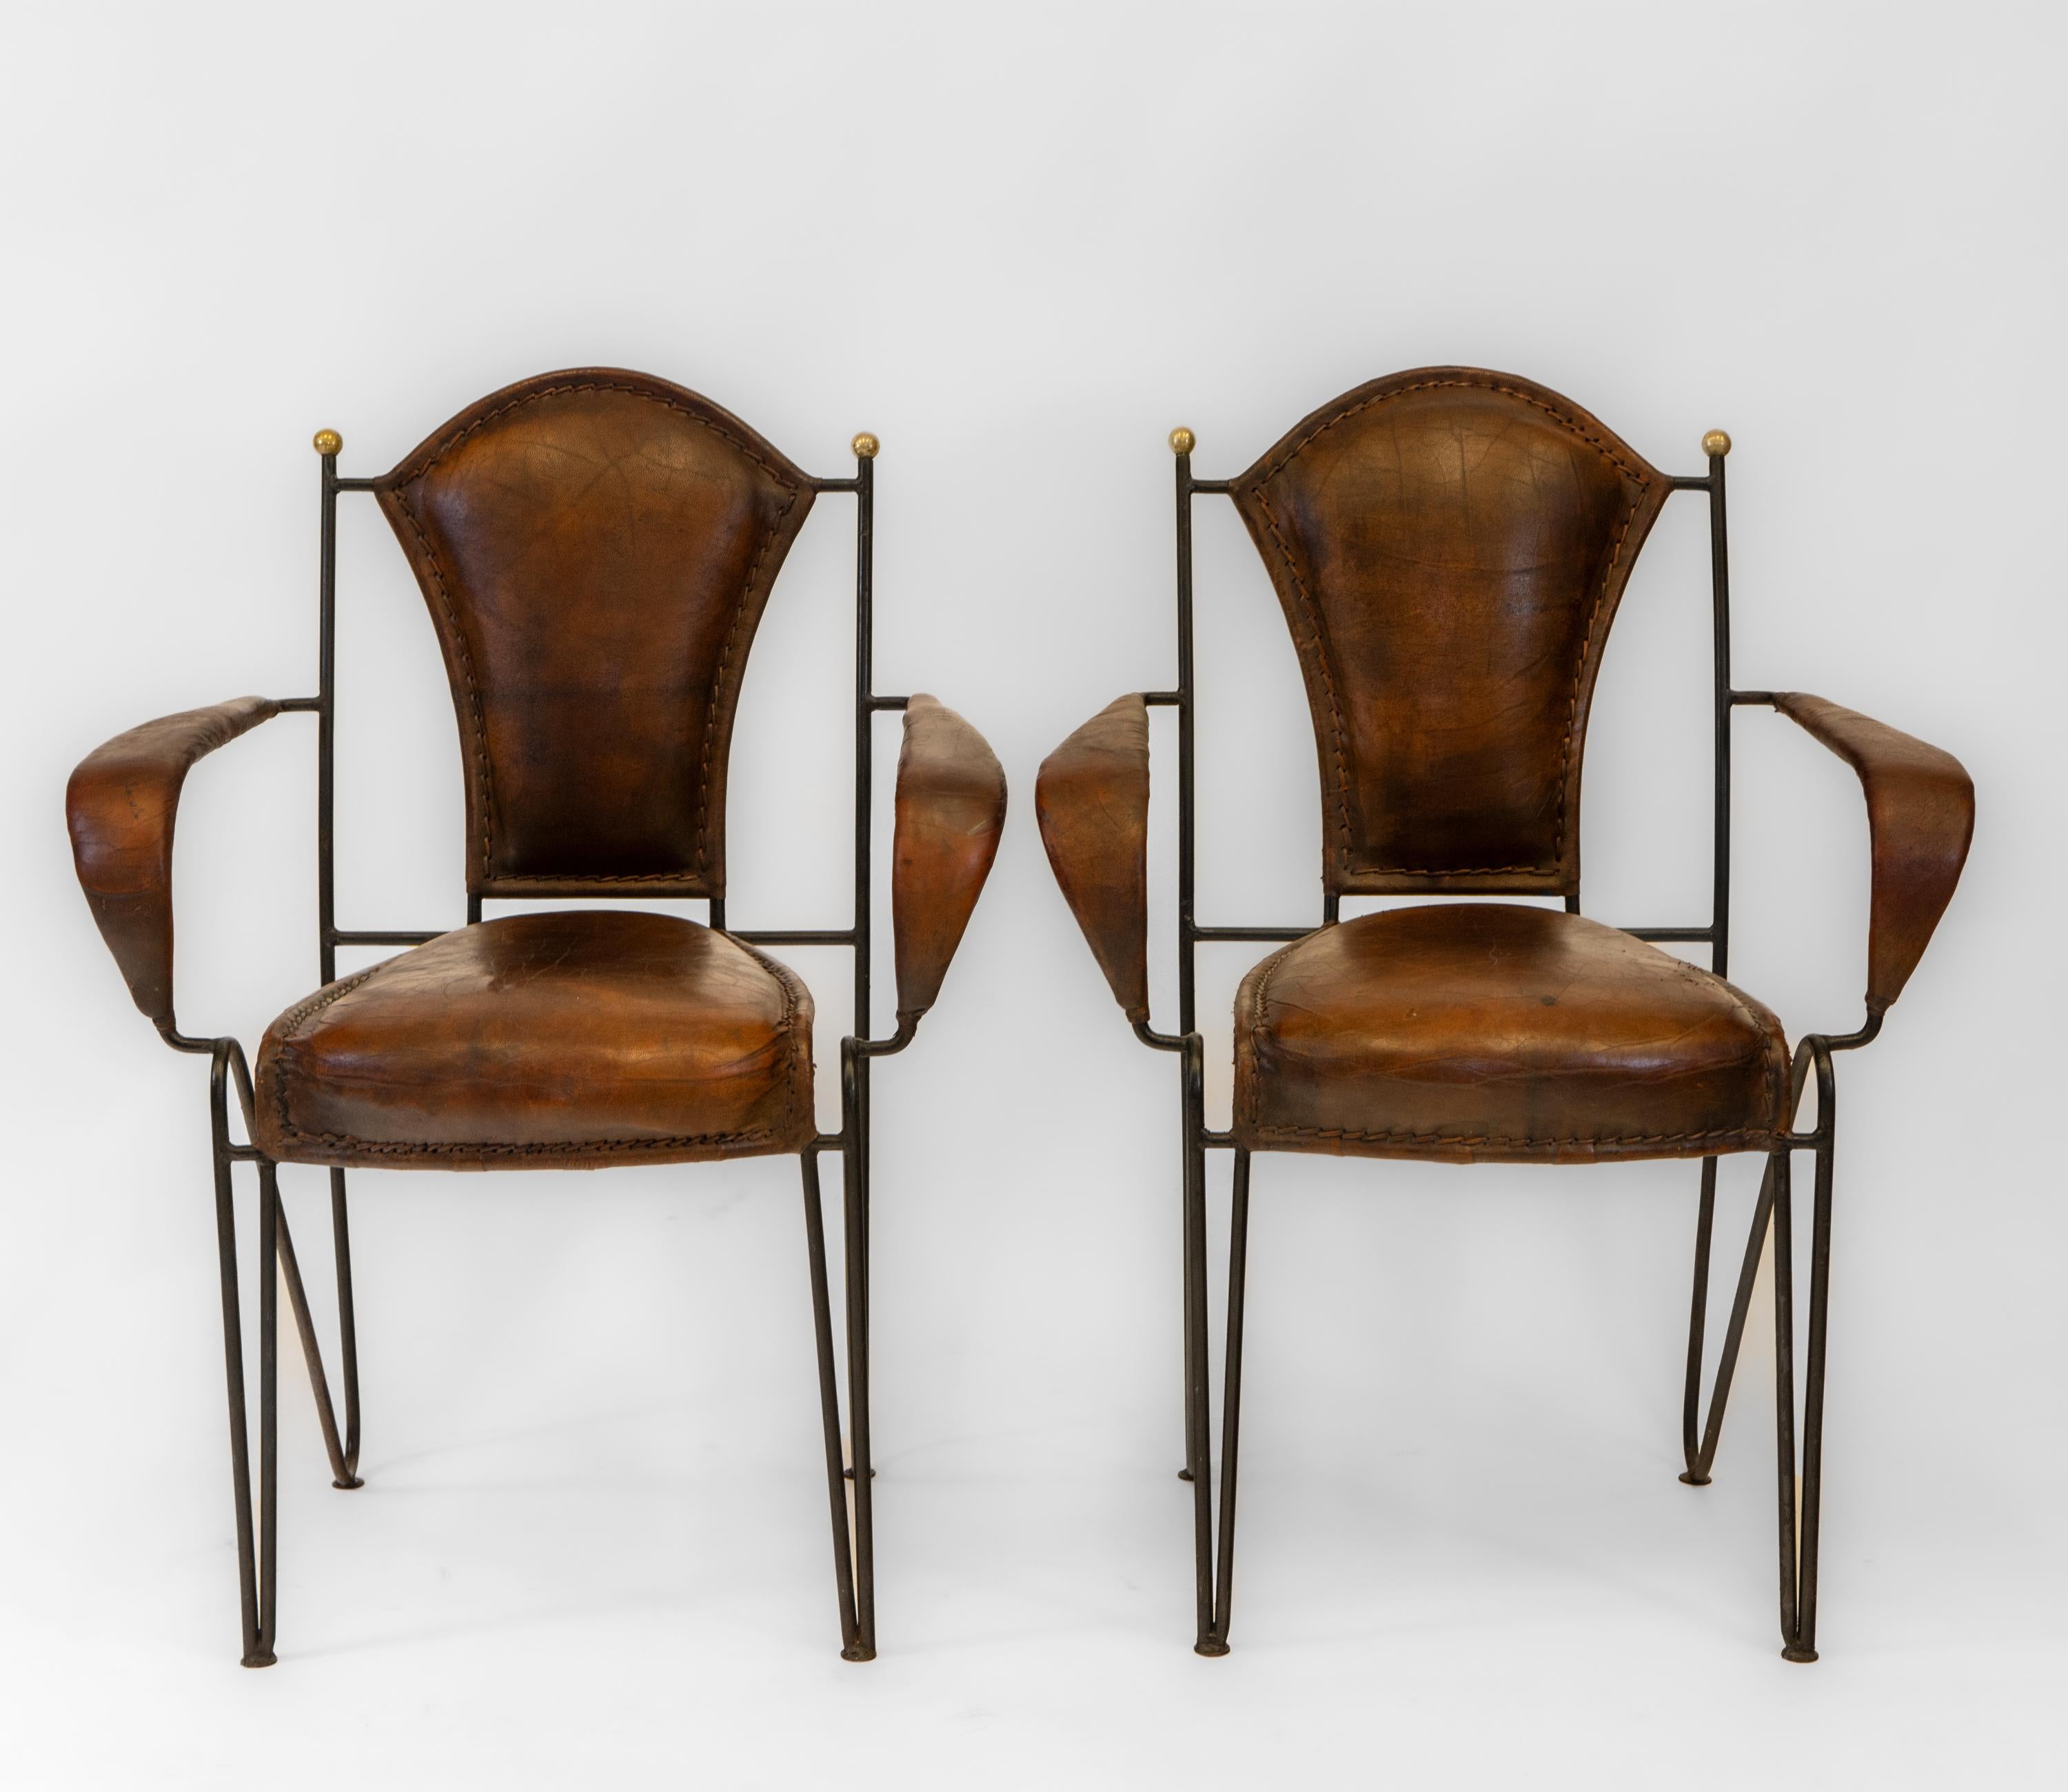 Fabuleuse paire de fauteuils en cuir et en fer du milieu du siècle dernier. Vers les années 1950.

Une autre paire est disponible séparément, ainsi qu'un ensemble de quatre.

Les chaises sont dotées d'embouts en laiton qui mènent à des cadres